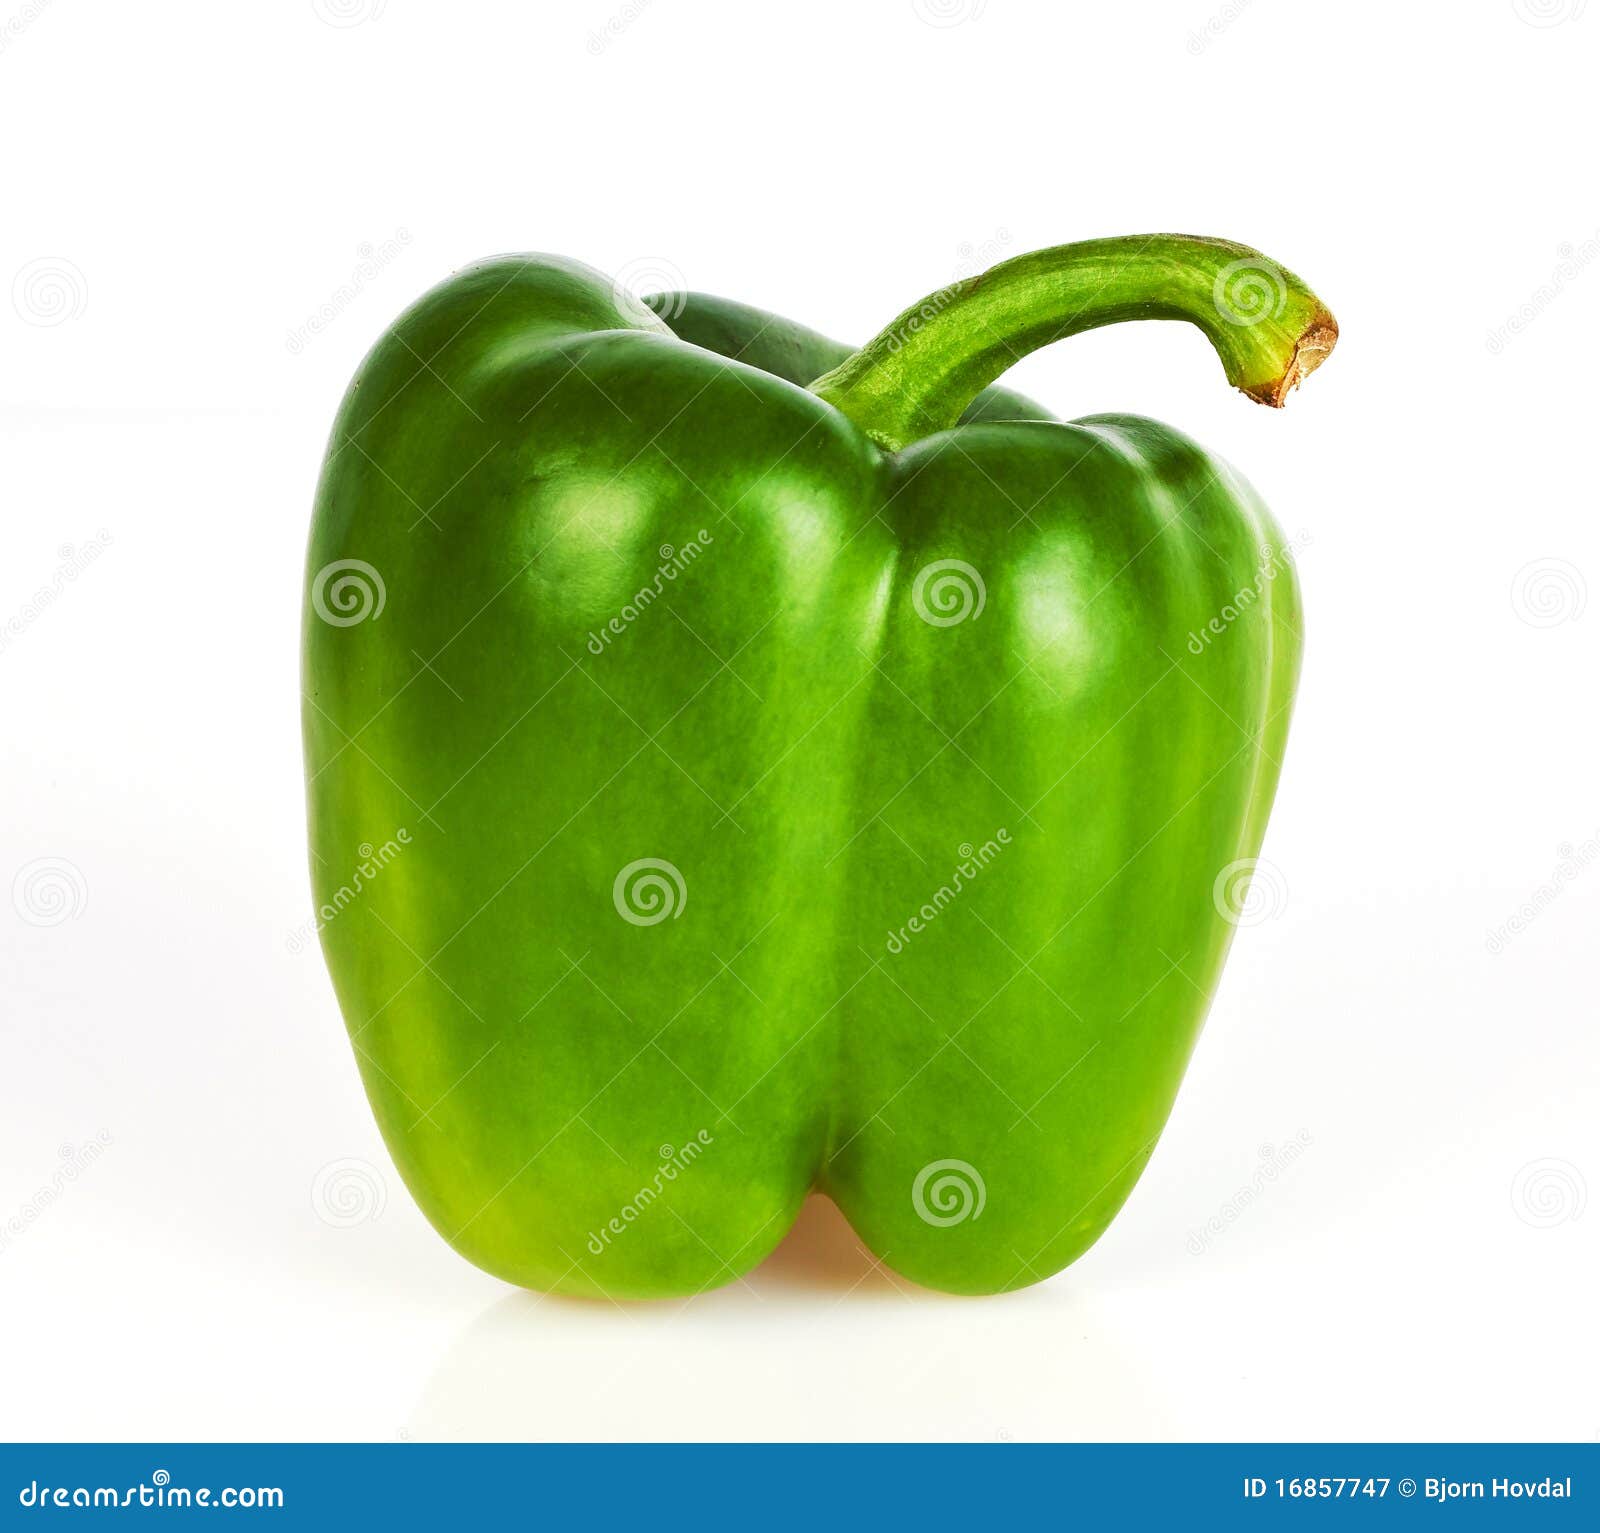 green paprika